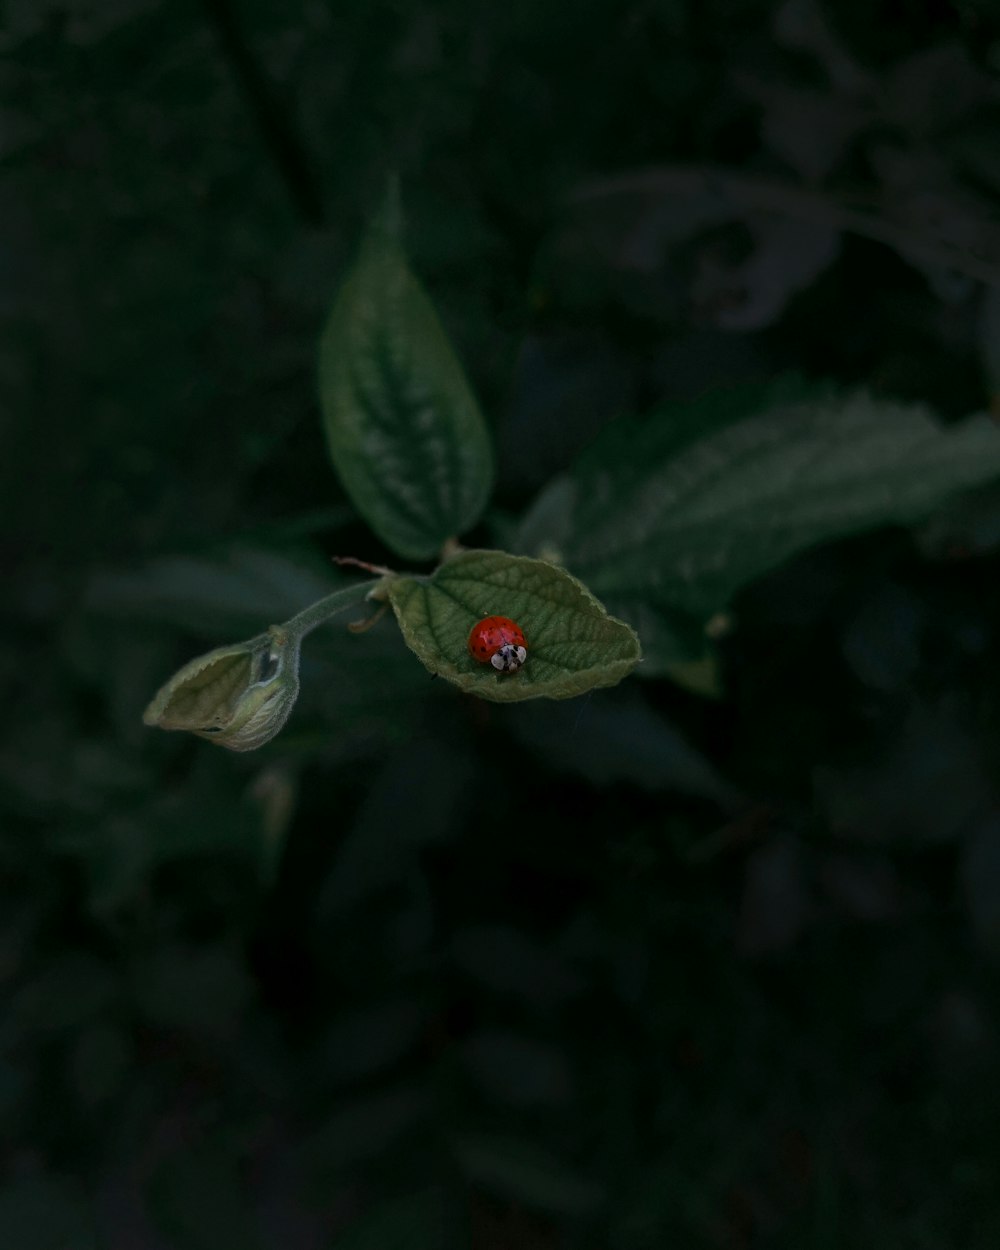 a flower on a leaf